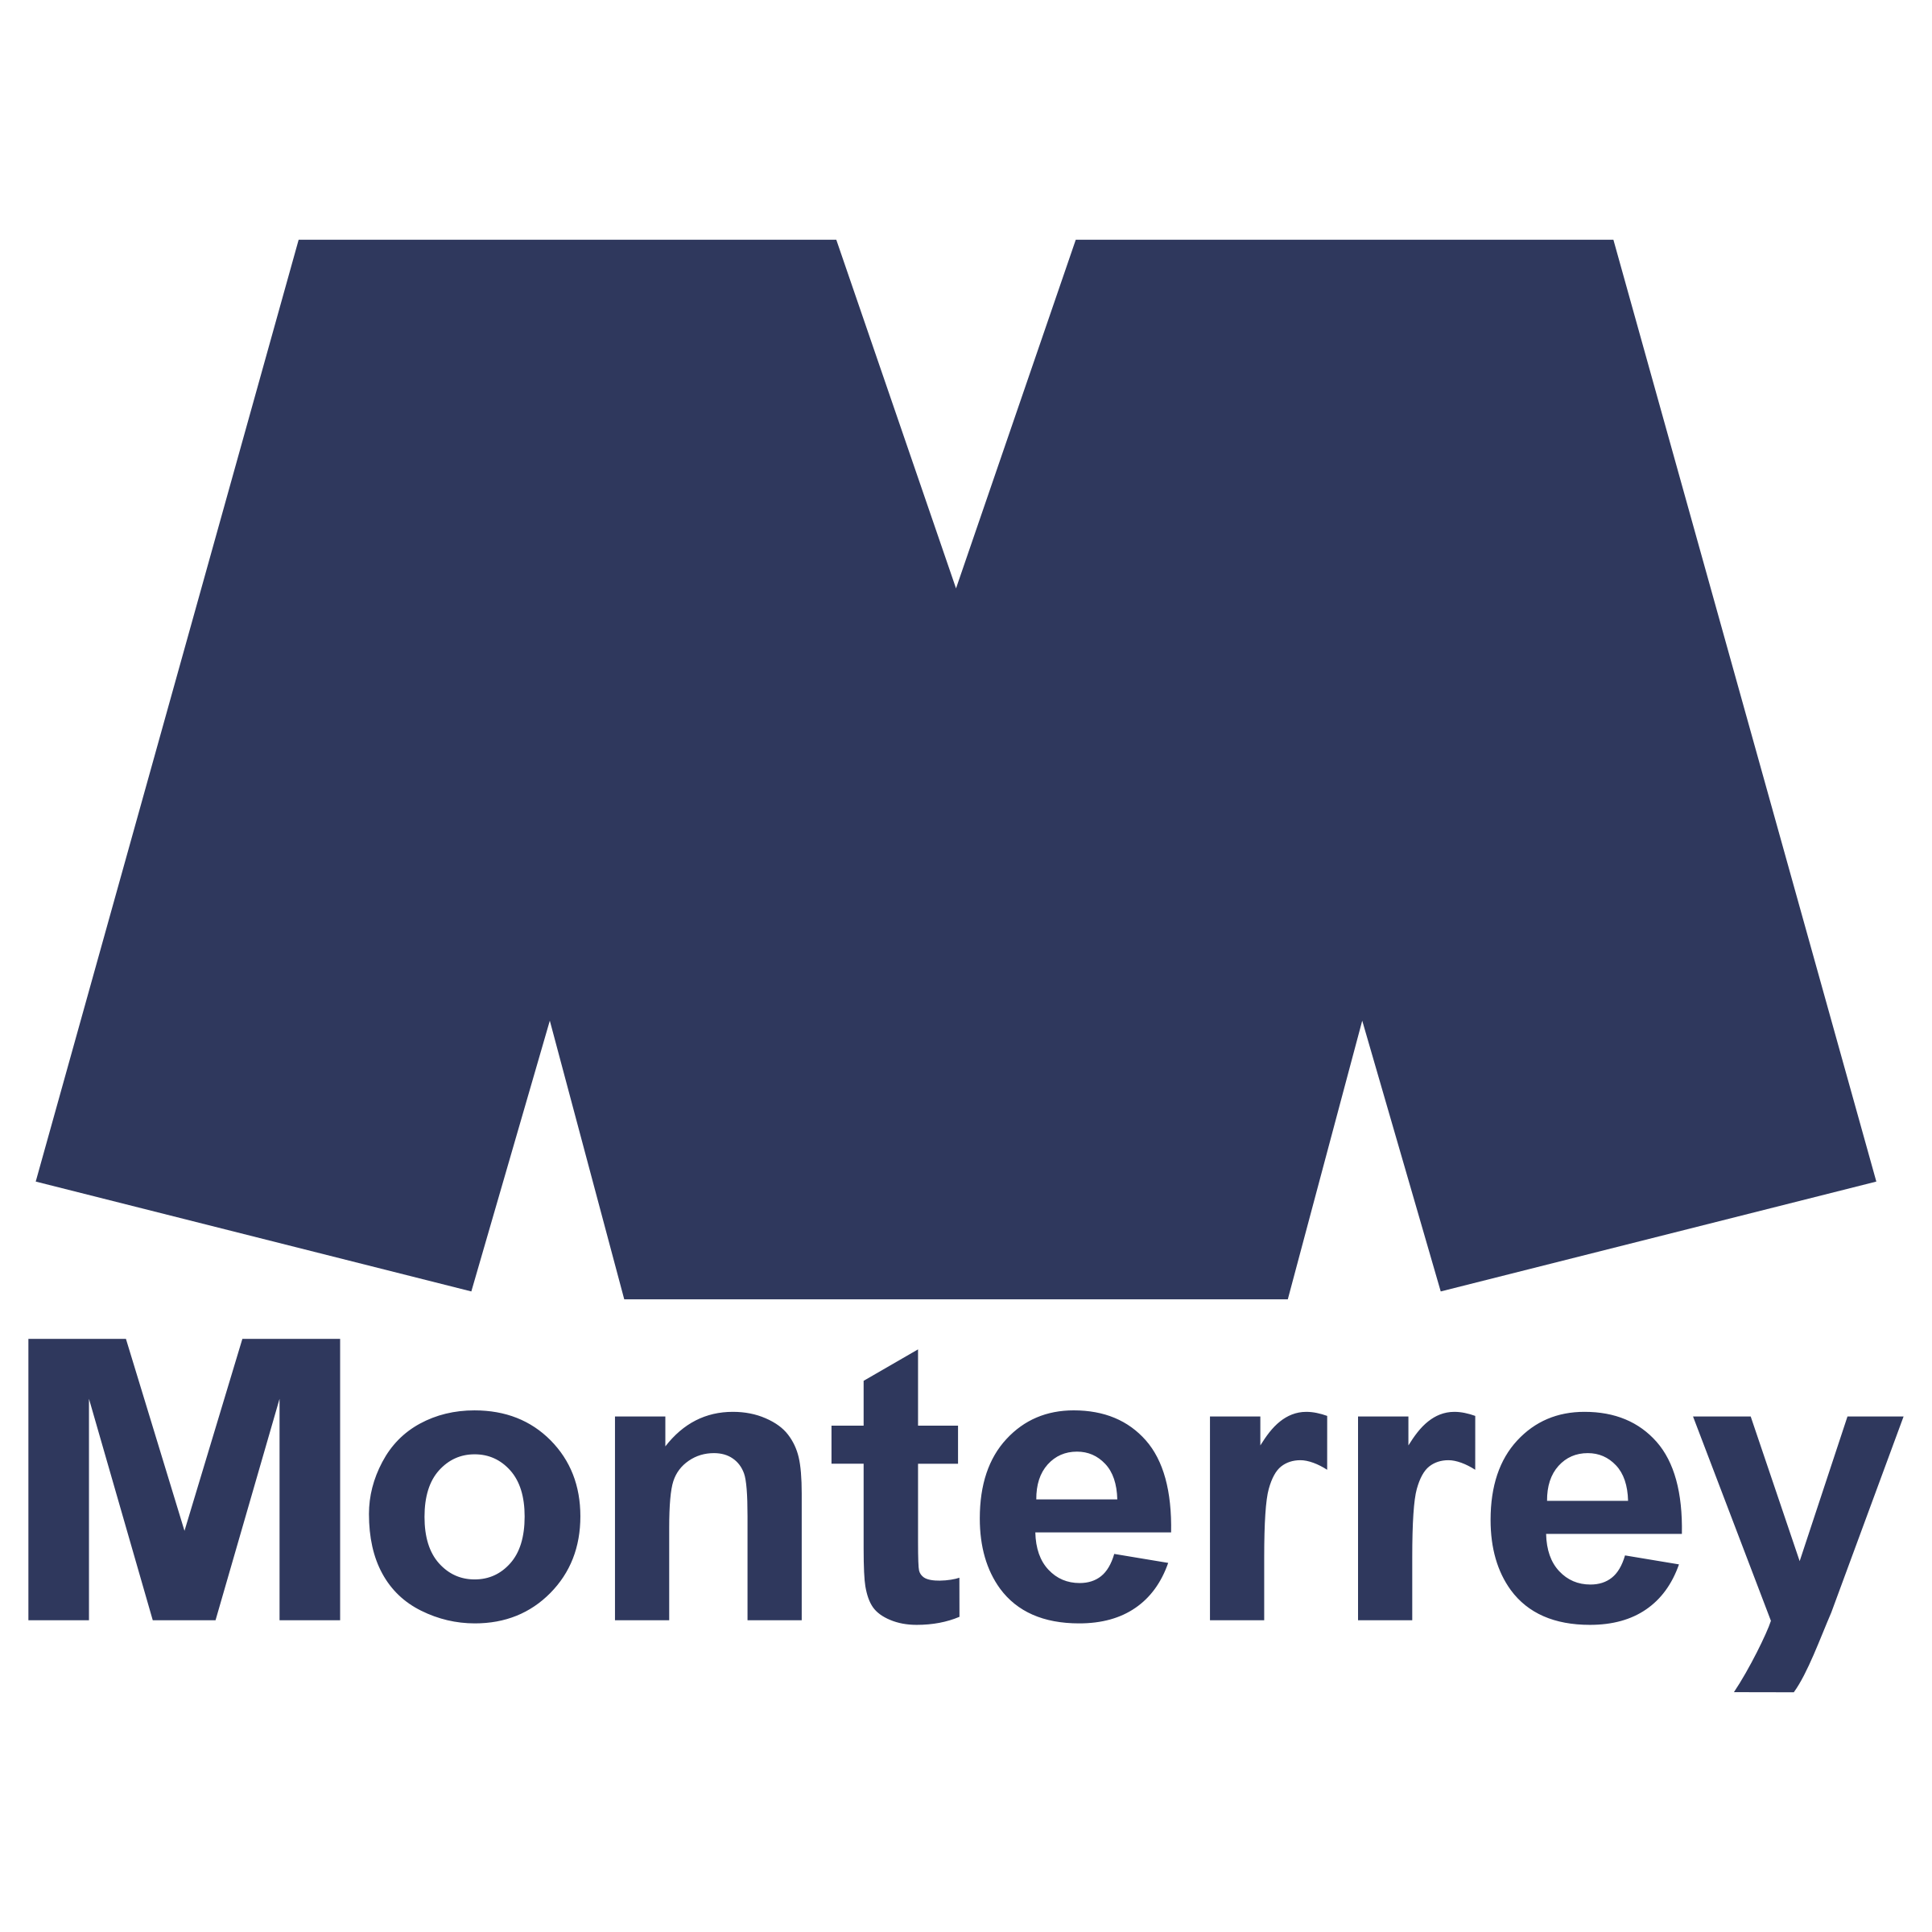 Monterrey Transparent File